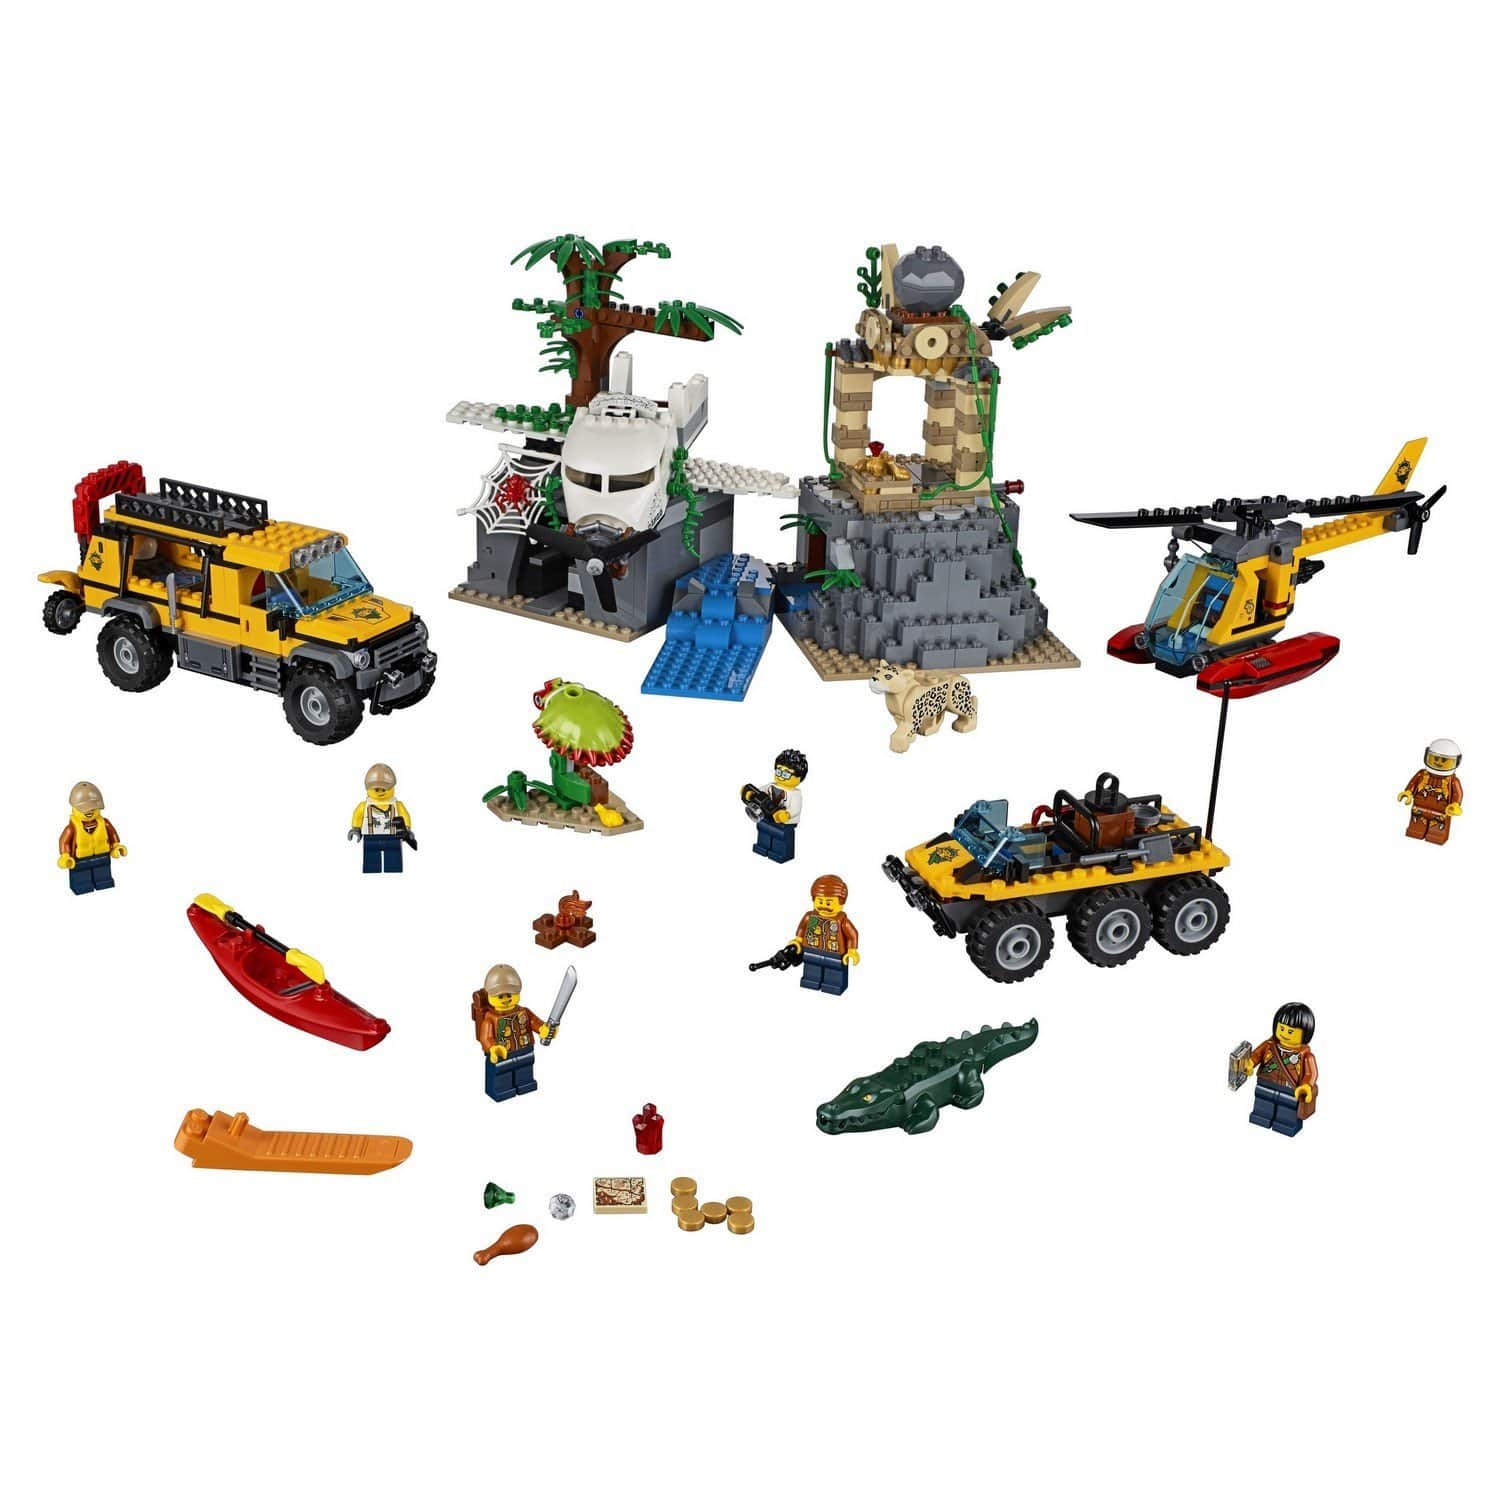 Конструктор LEGO City 60161 База исследователей джунглей